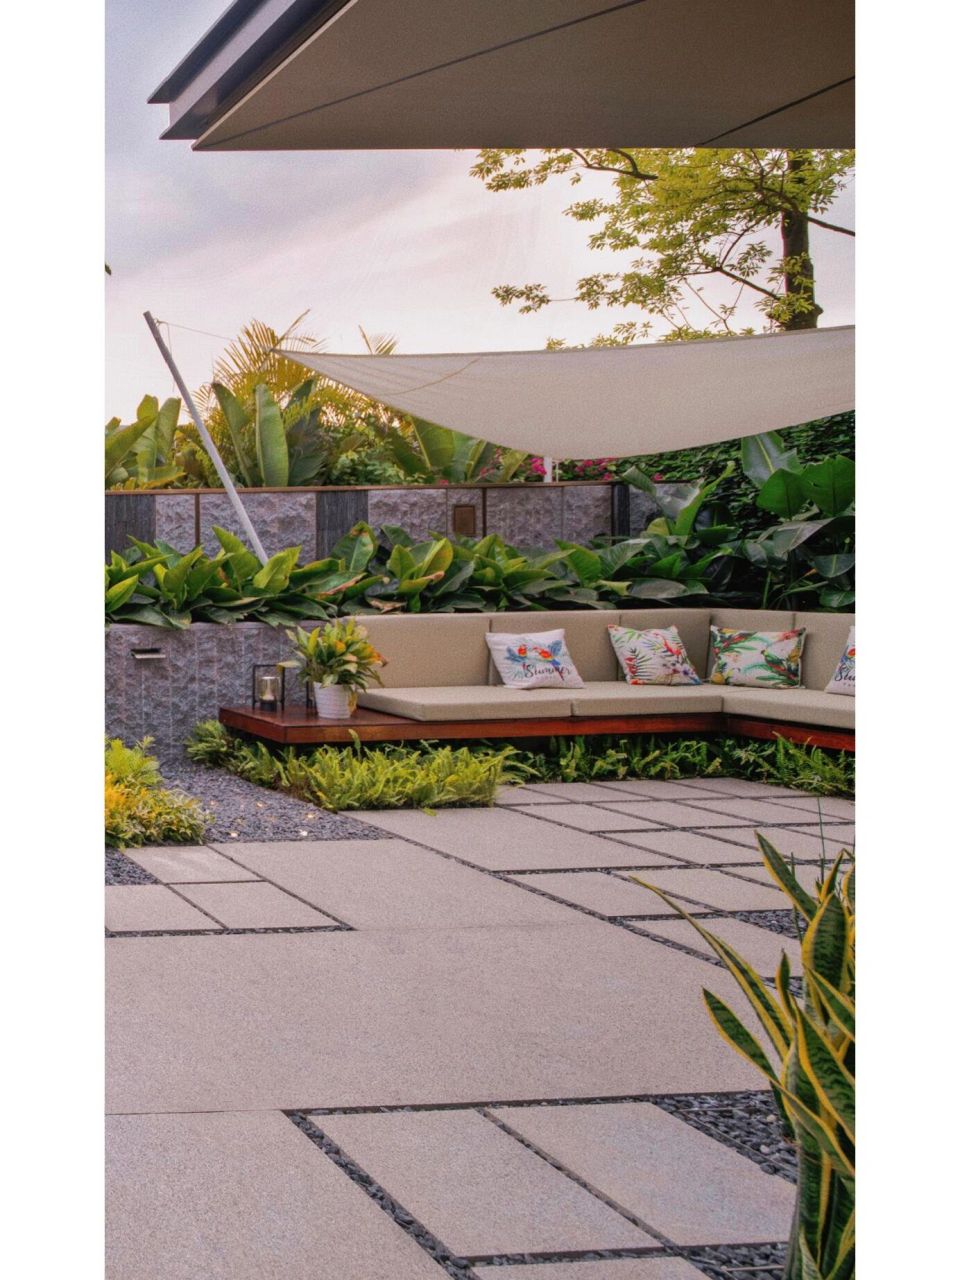 50平方米迷你叠墅小庭院花园设计分享 项目名称:海口·金地云海湾